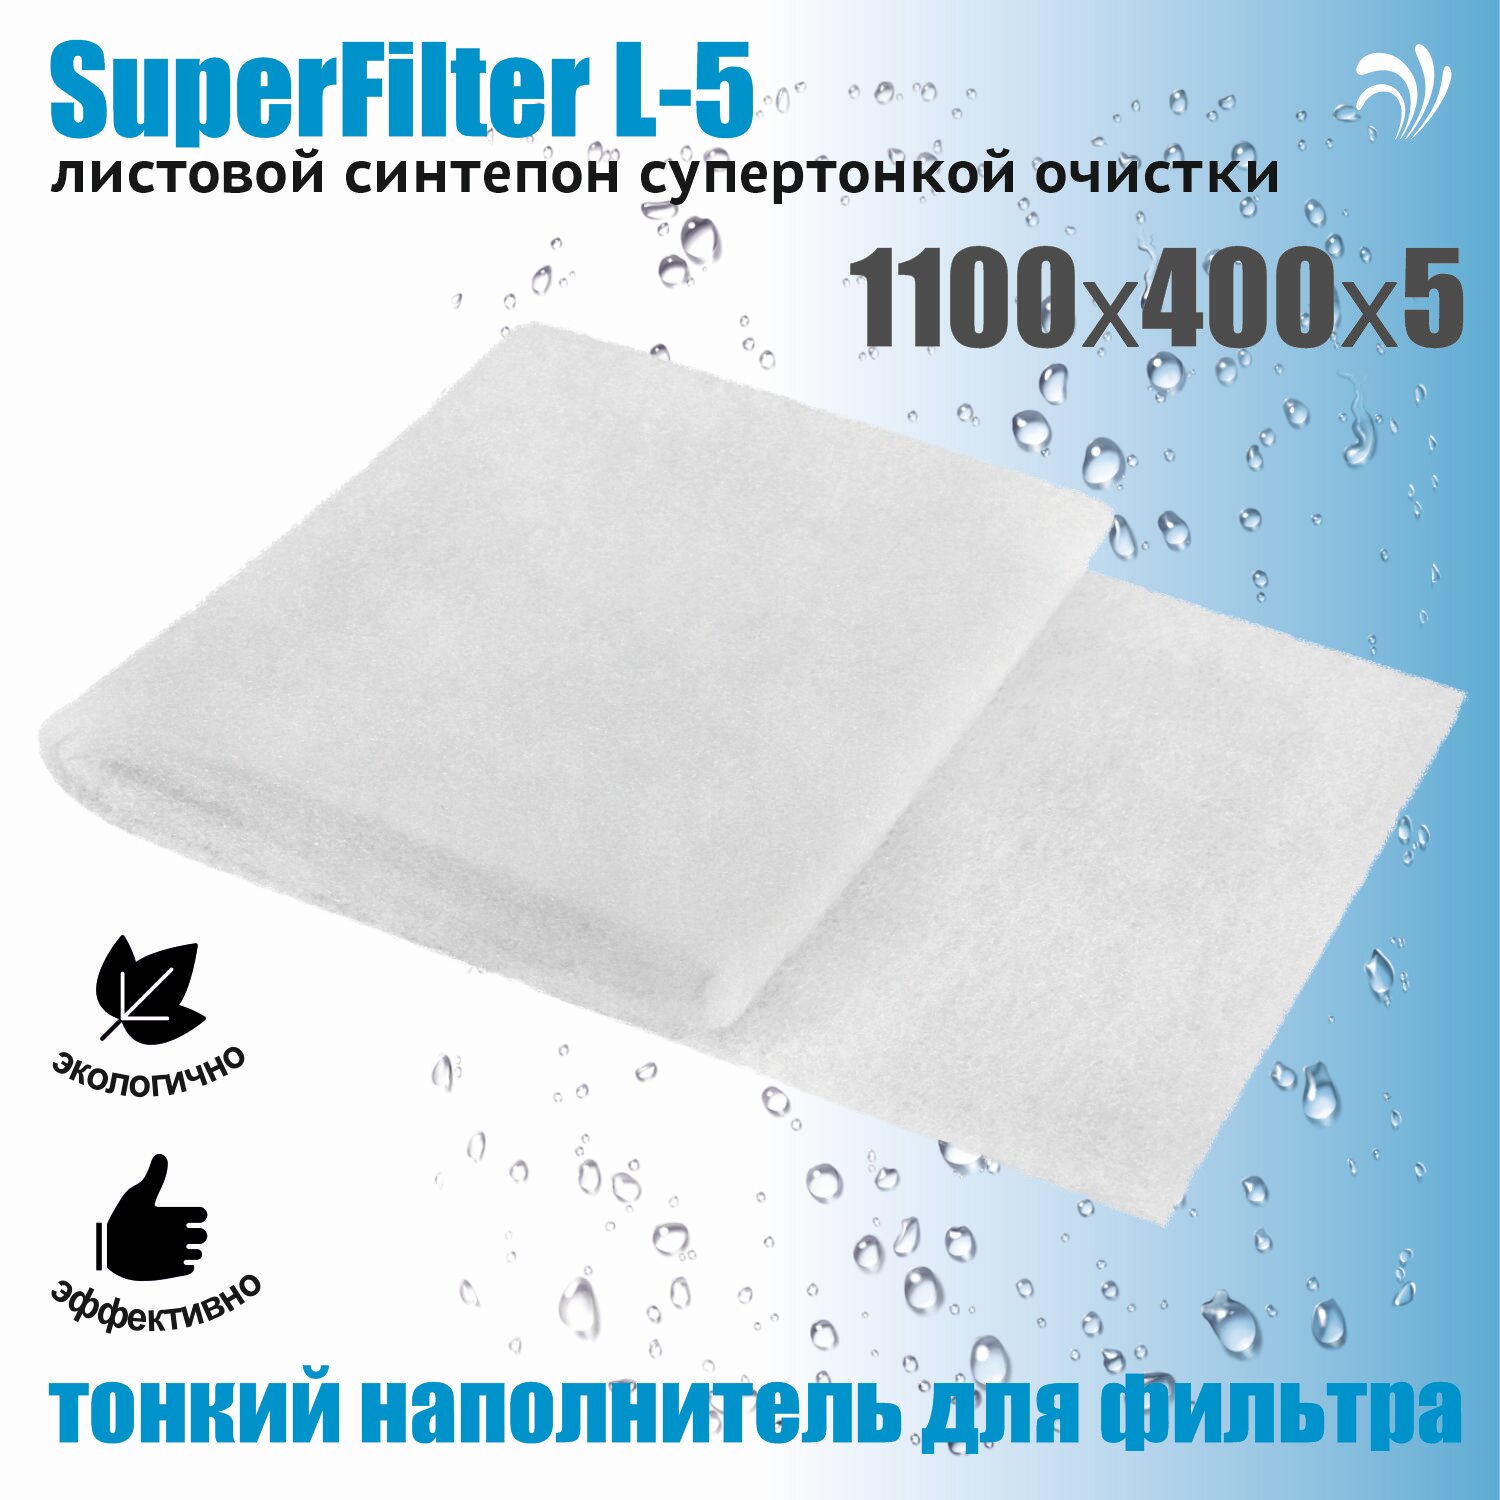 Krelong SuperFilter L-5, листовой синтепон супертонкой очистки для всех типов аквариумных фильтров, 1100х400х5мм